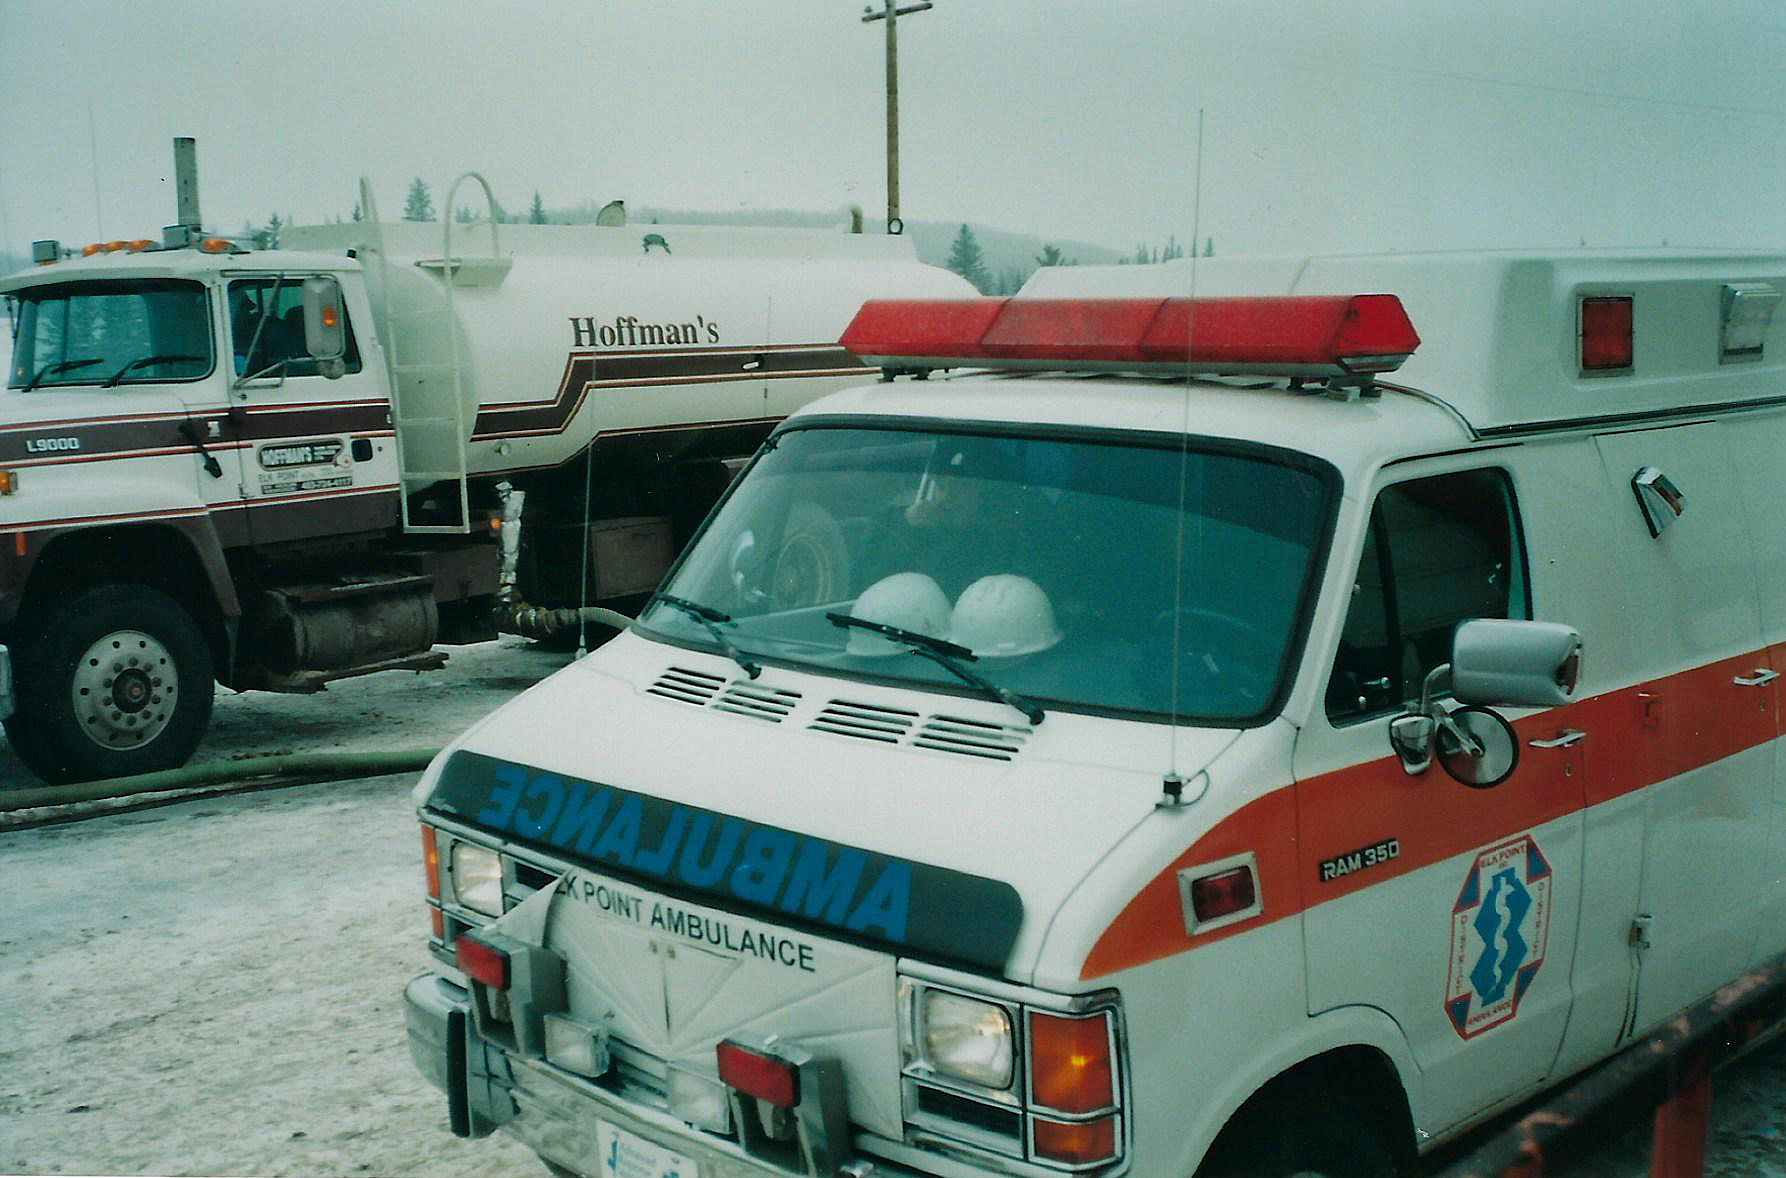 Ambulance on Standby